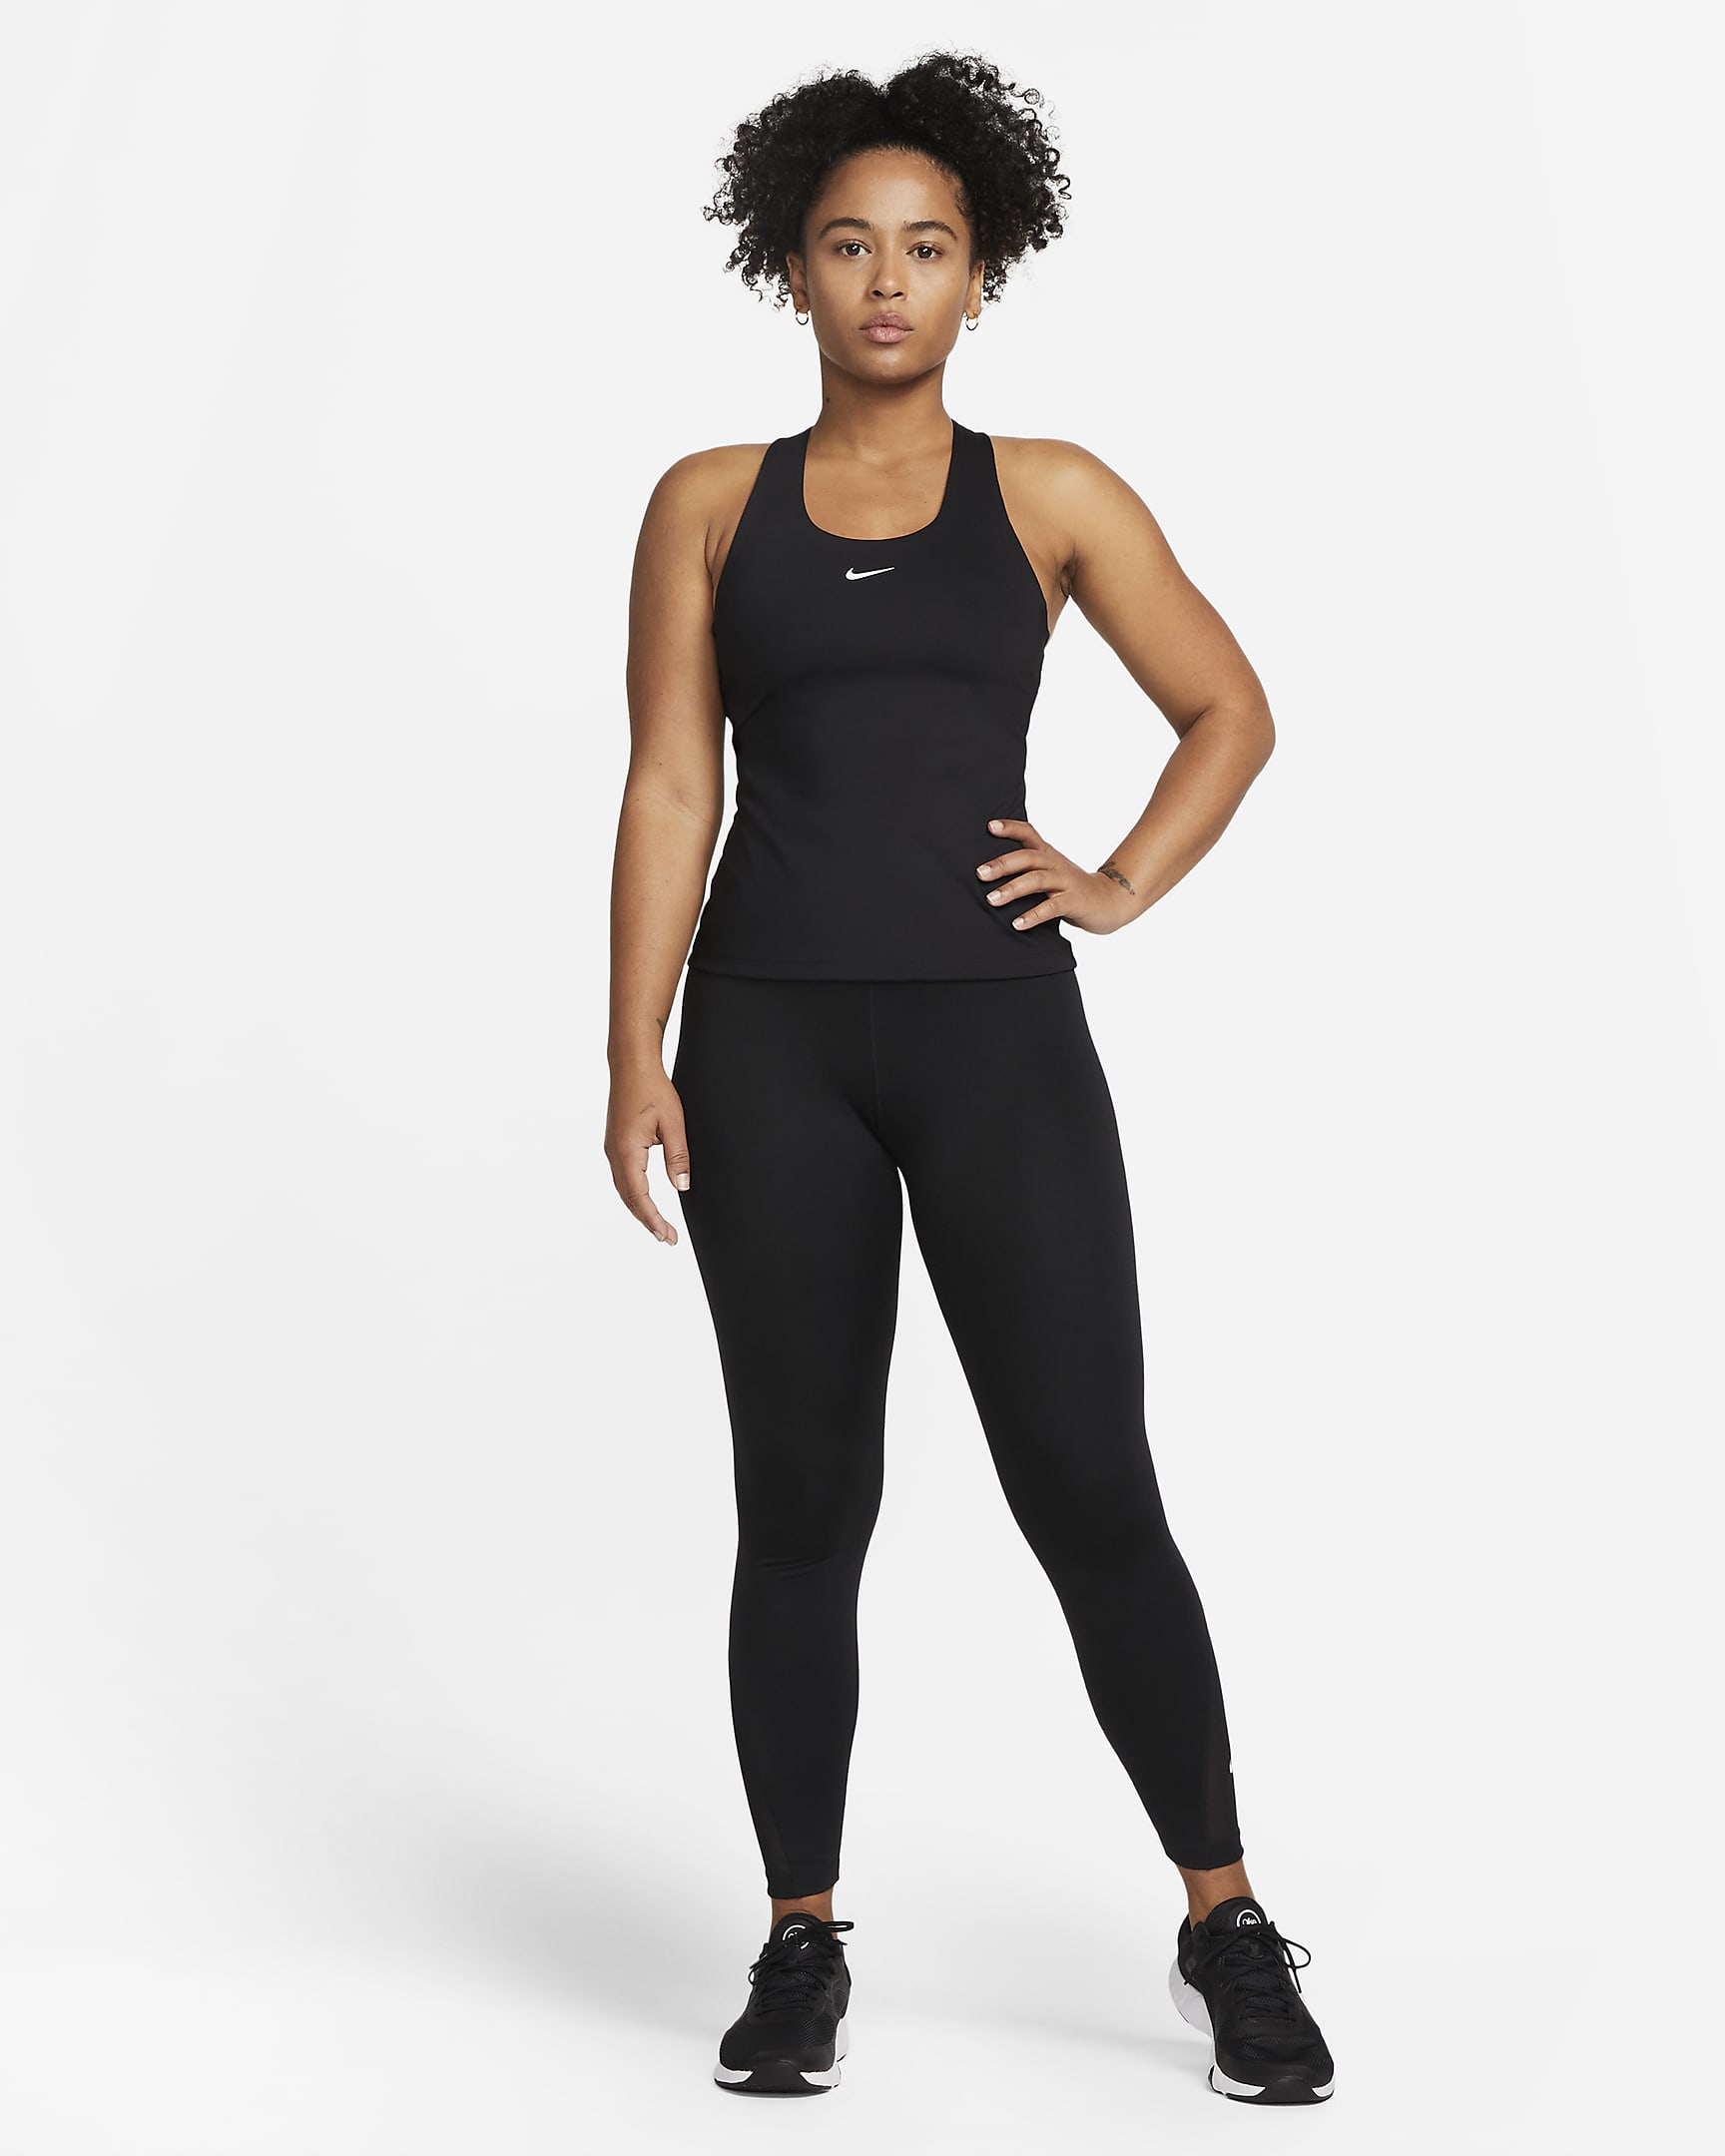 Débardeur de sport rembourré à maintien normal Nike Swoosh pour femme - Noir/Noir/Blanc